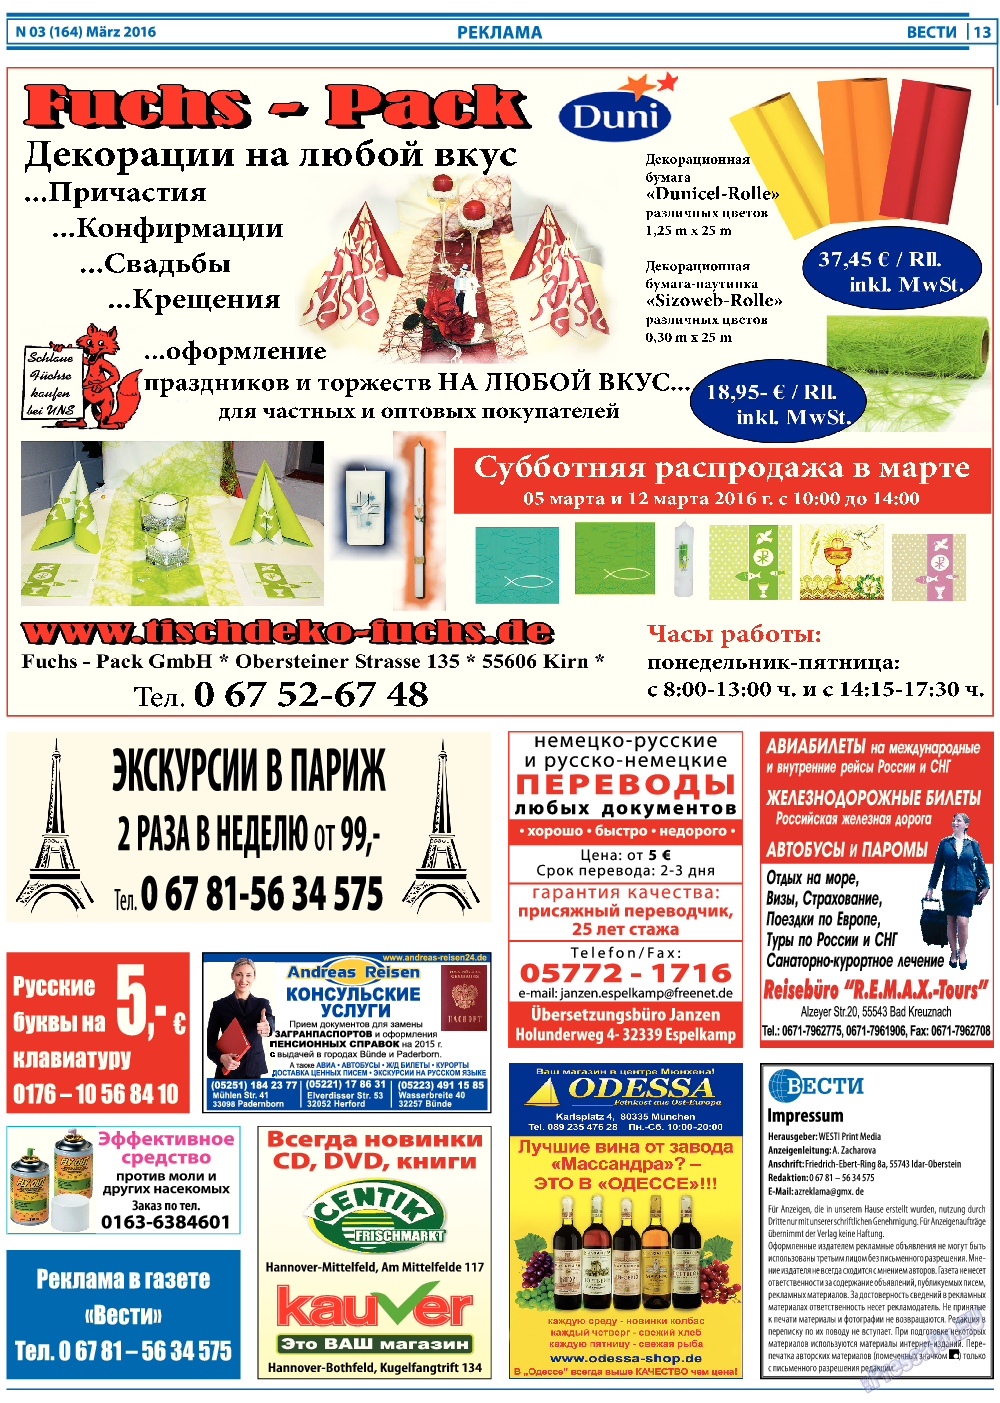 Вести, газета. 2016 №3 стр.13